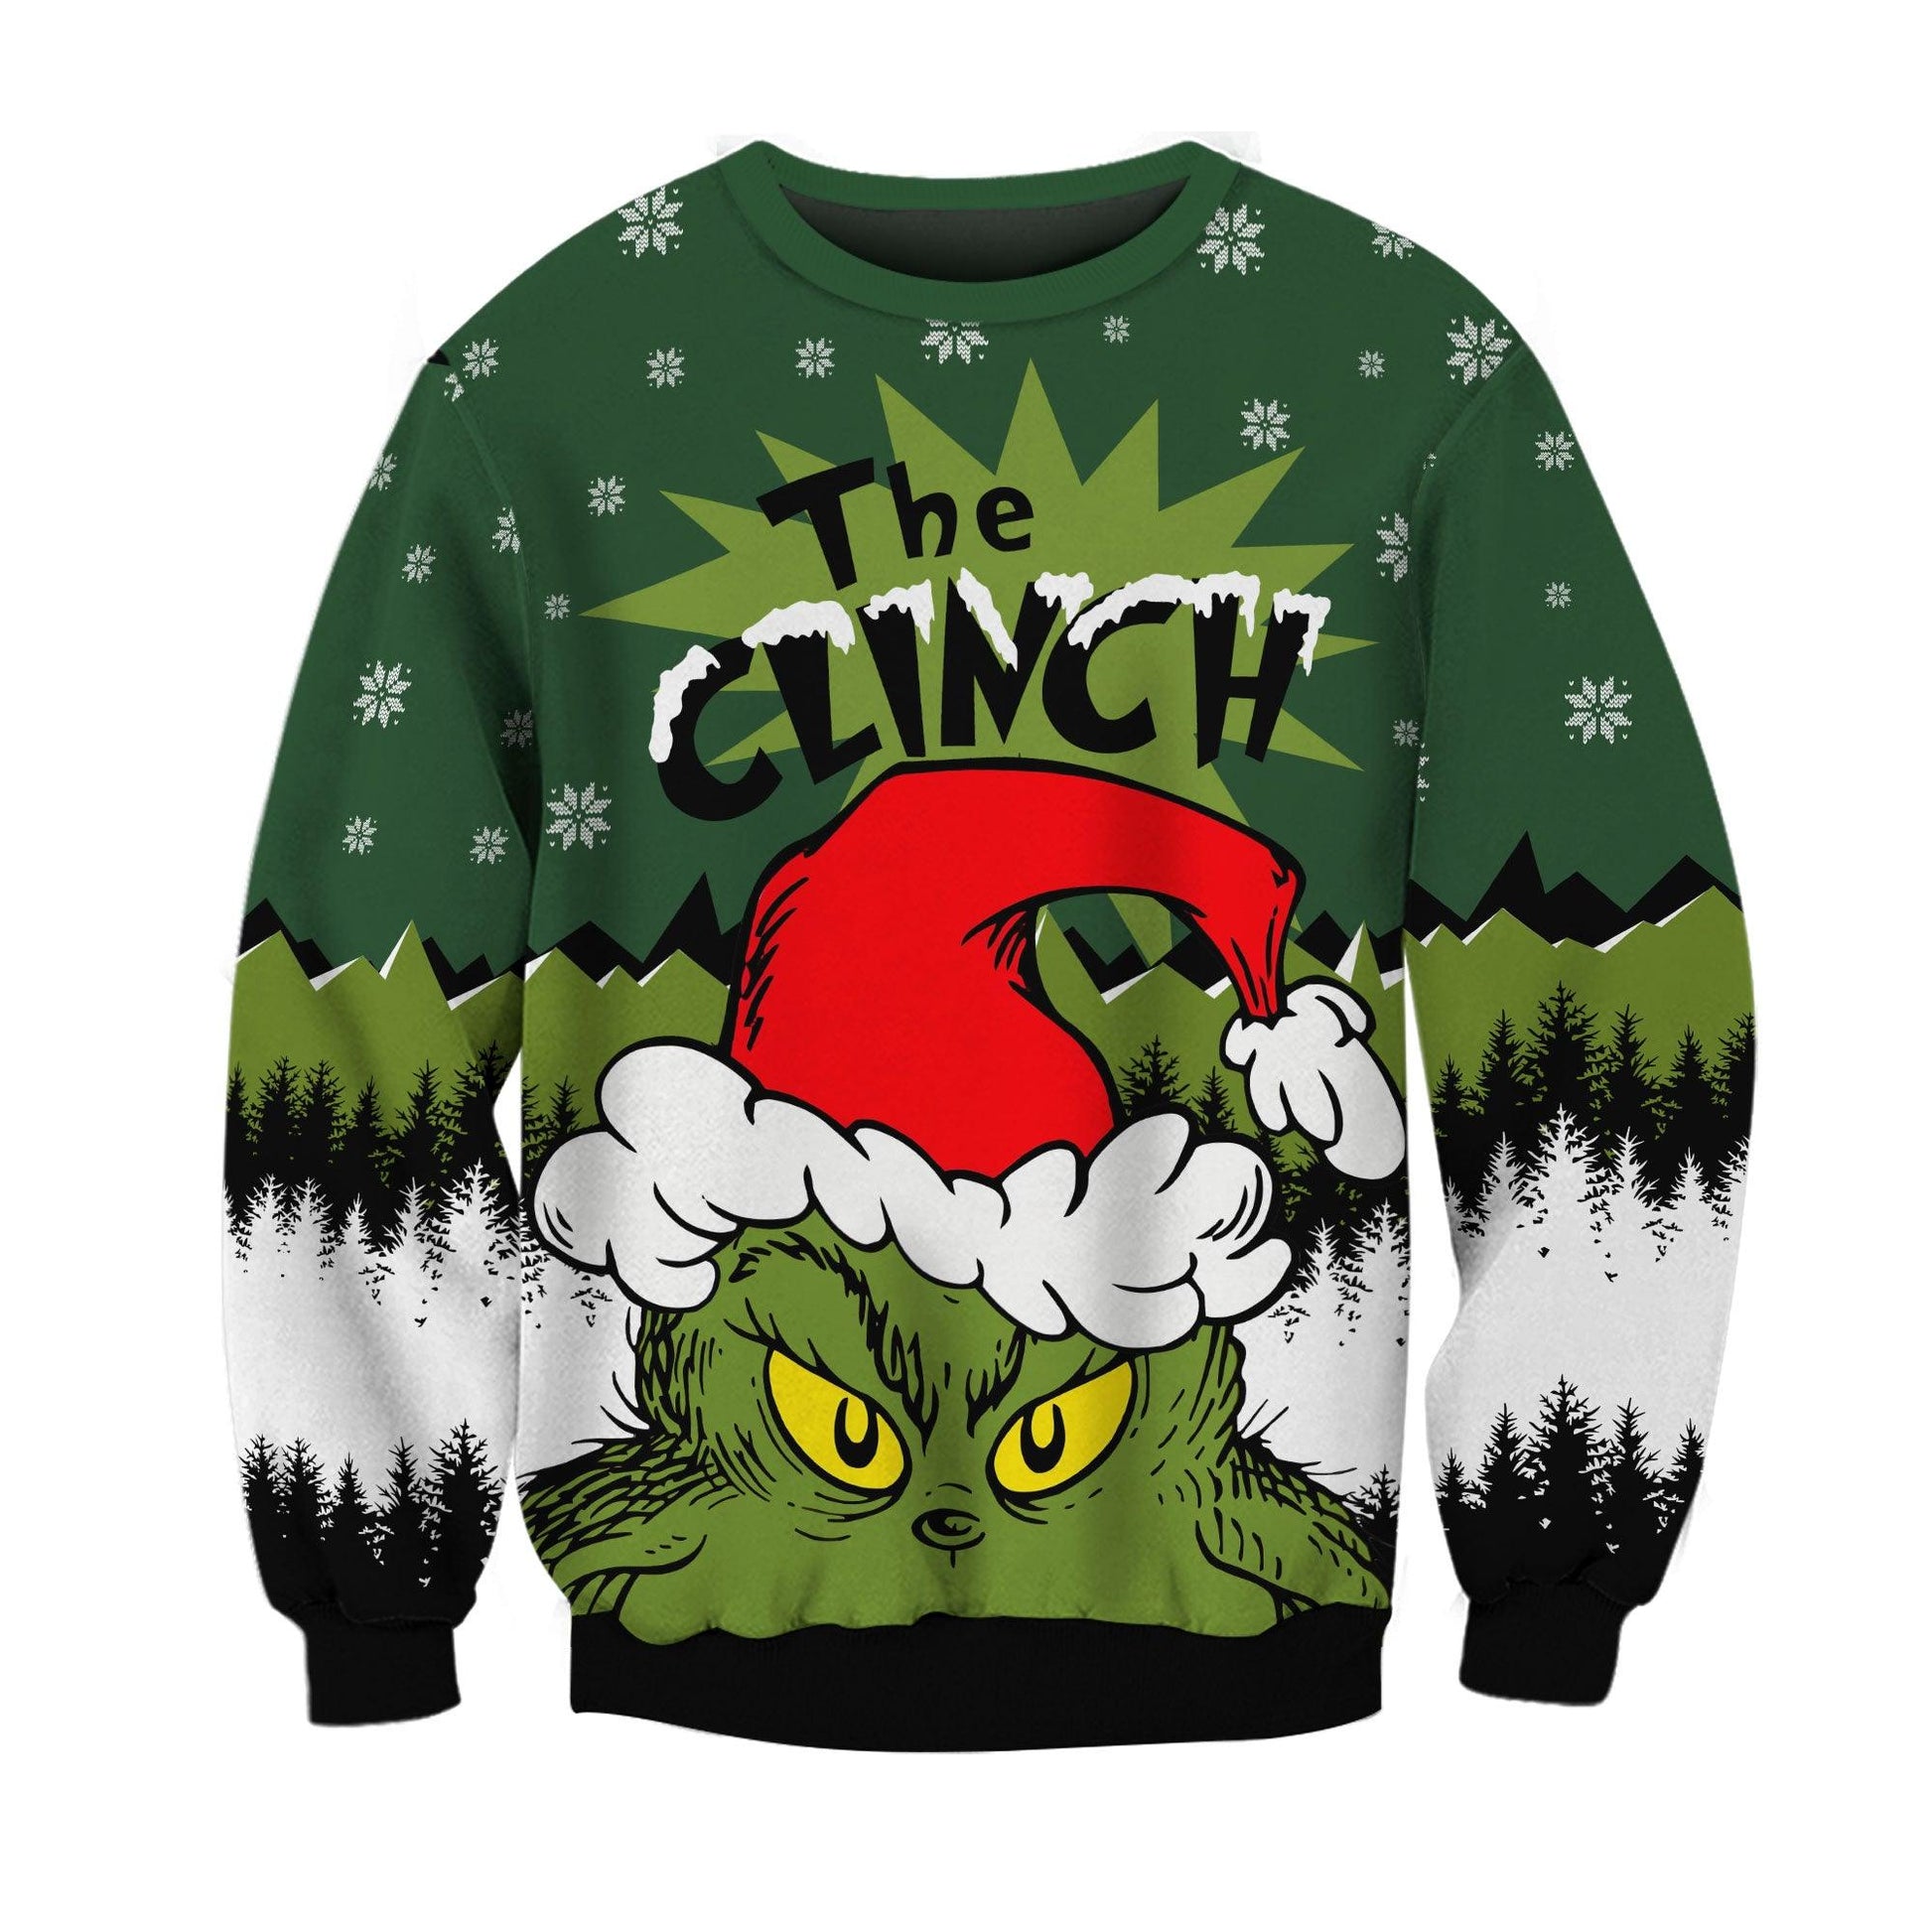 Grinch Santa Clause Sweatshirt